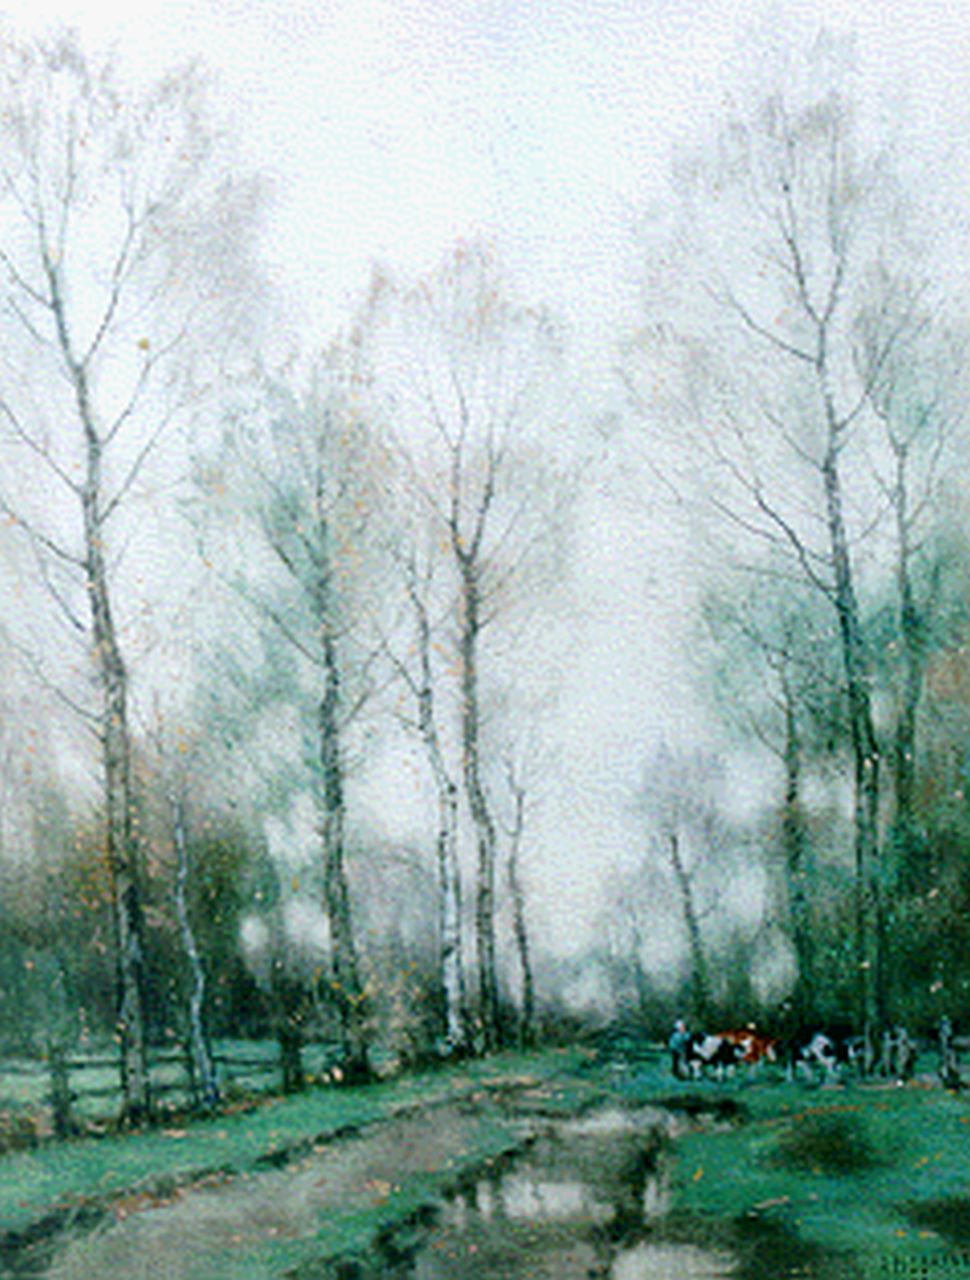 Gorter A.M.  | 'Arnold' Marc Gorter, Twents landschap, aquarel op papier 55,0 x 42,0 cm, gesigneerd rechtsonder